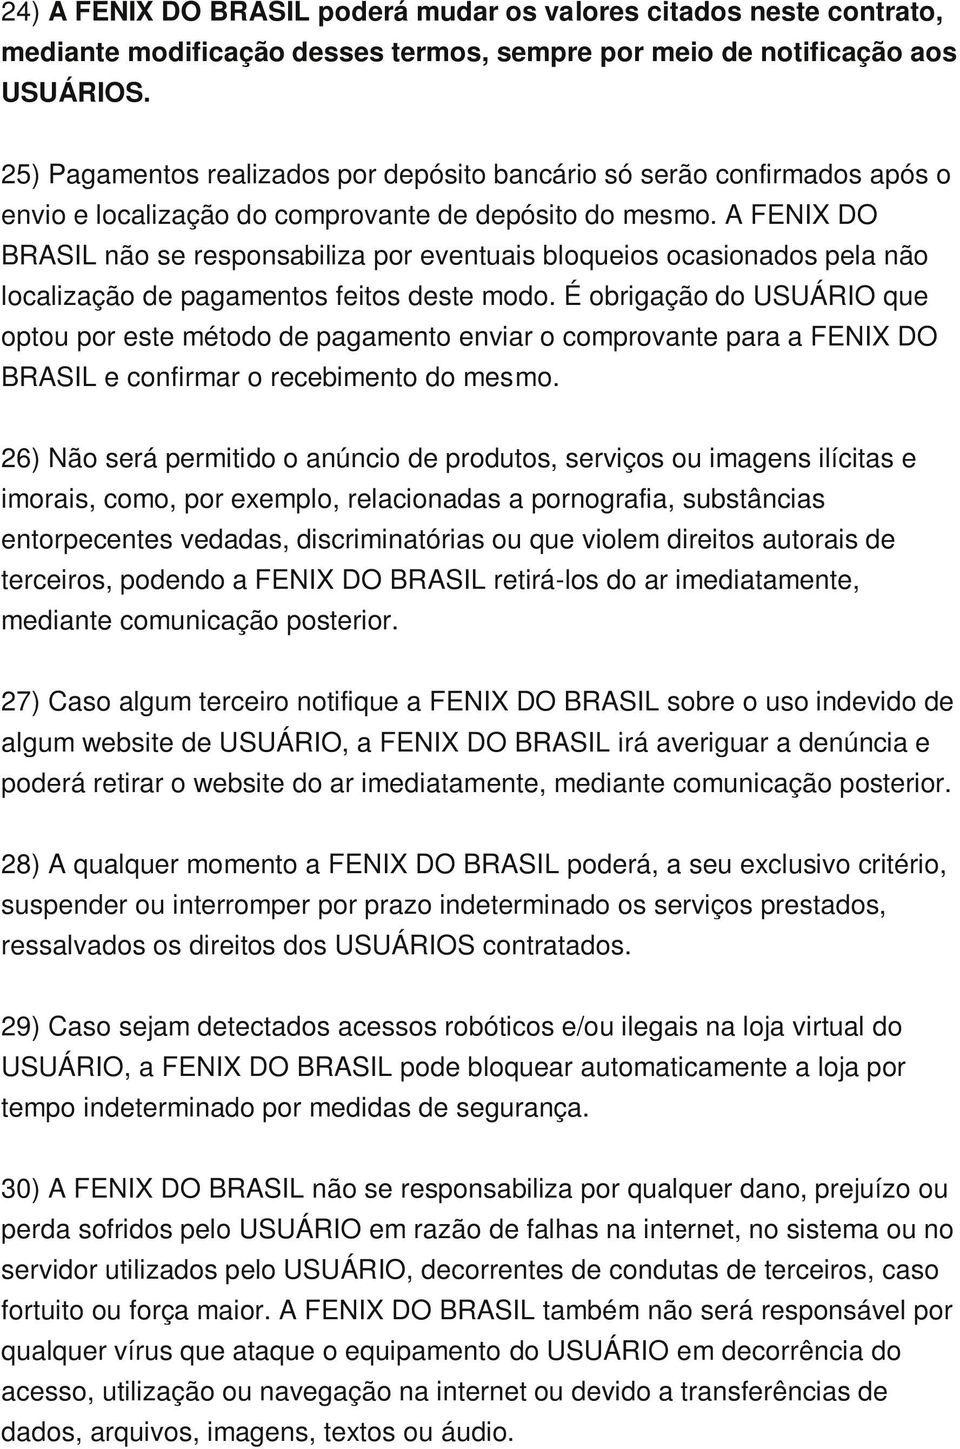 A FENIX DO BRASIL não se responsabiliza por eventuais bloqueios ocasionados pela não localização de pagamentos feitos deste modo.